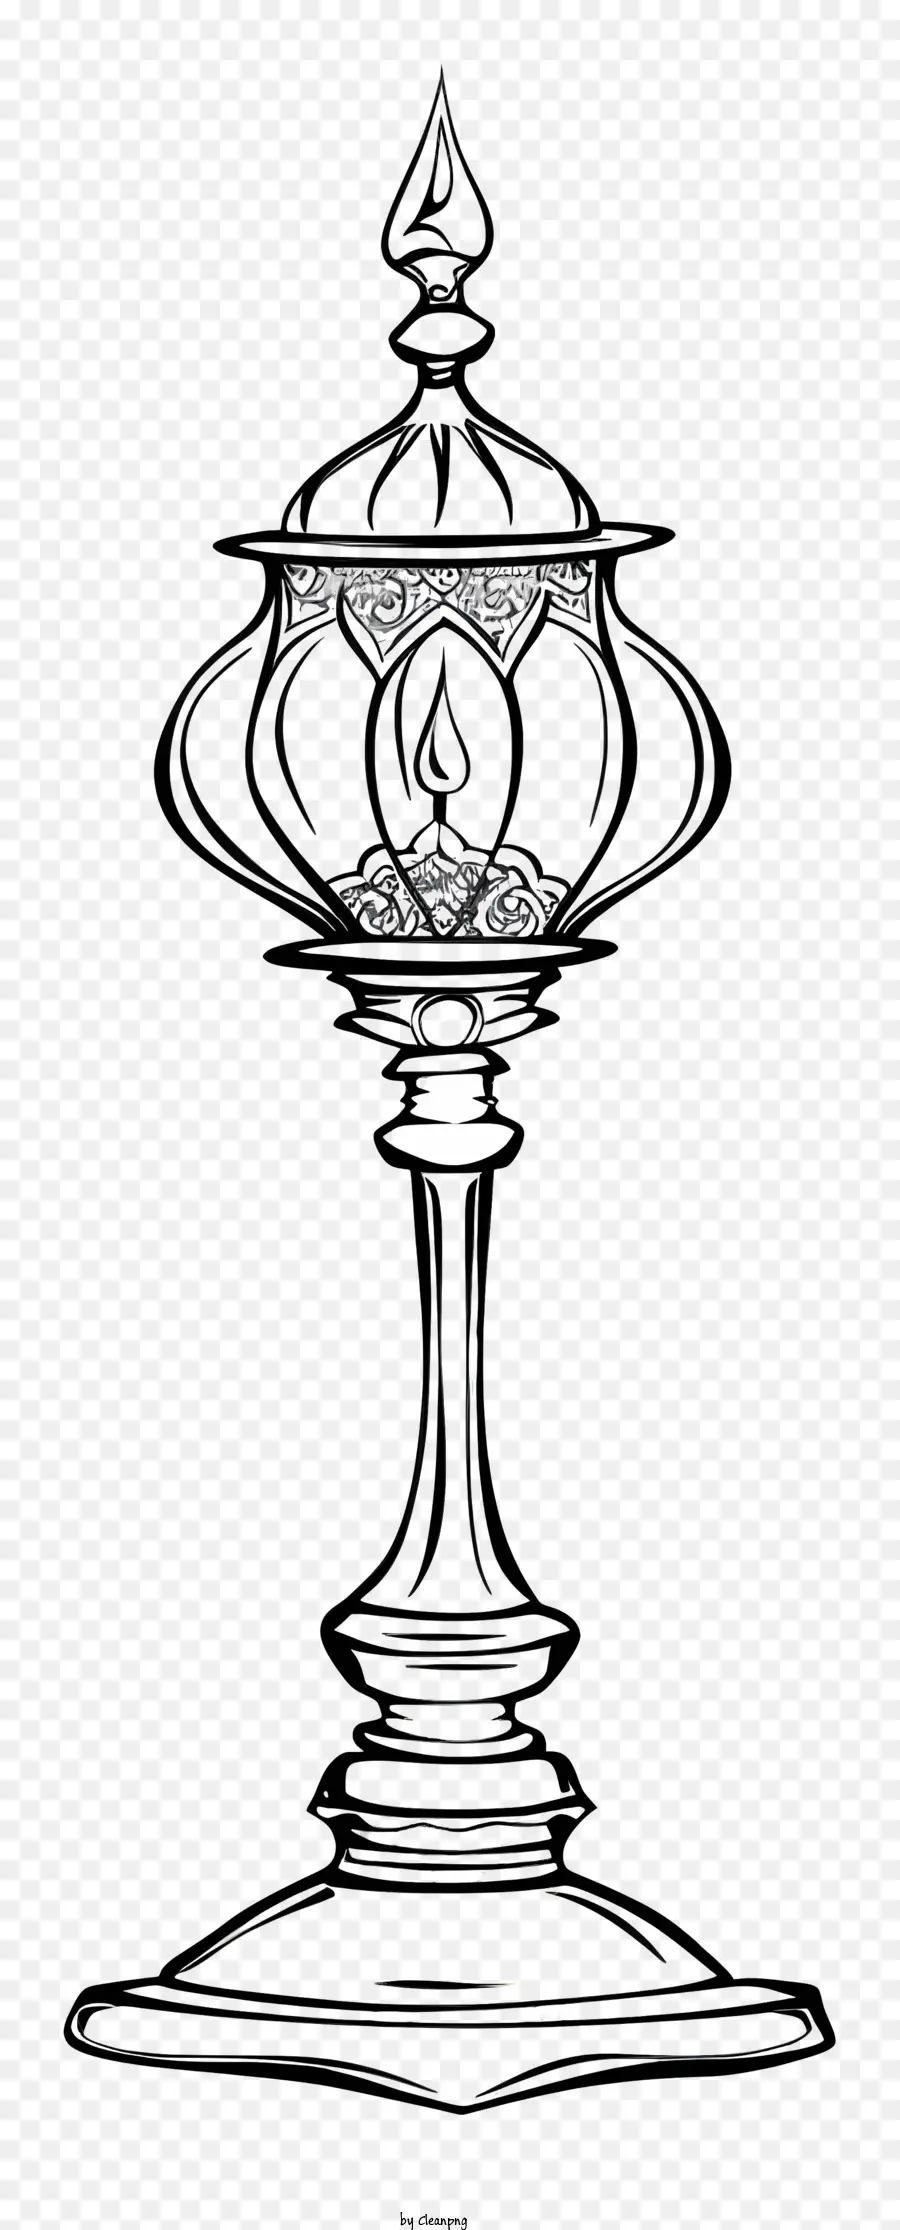 Islamico la lampada - Vaso di vetro intricato sospeso nella riflessione dell'acqua